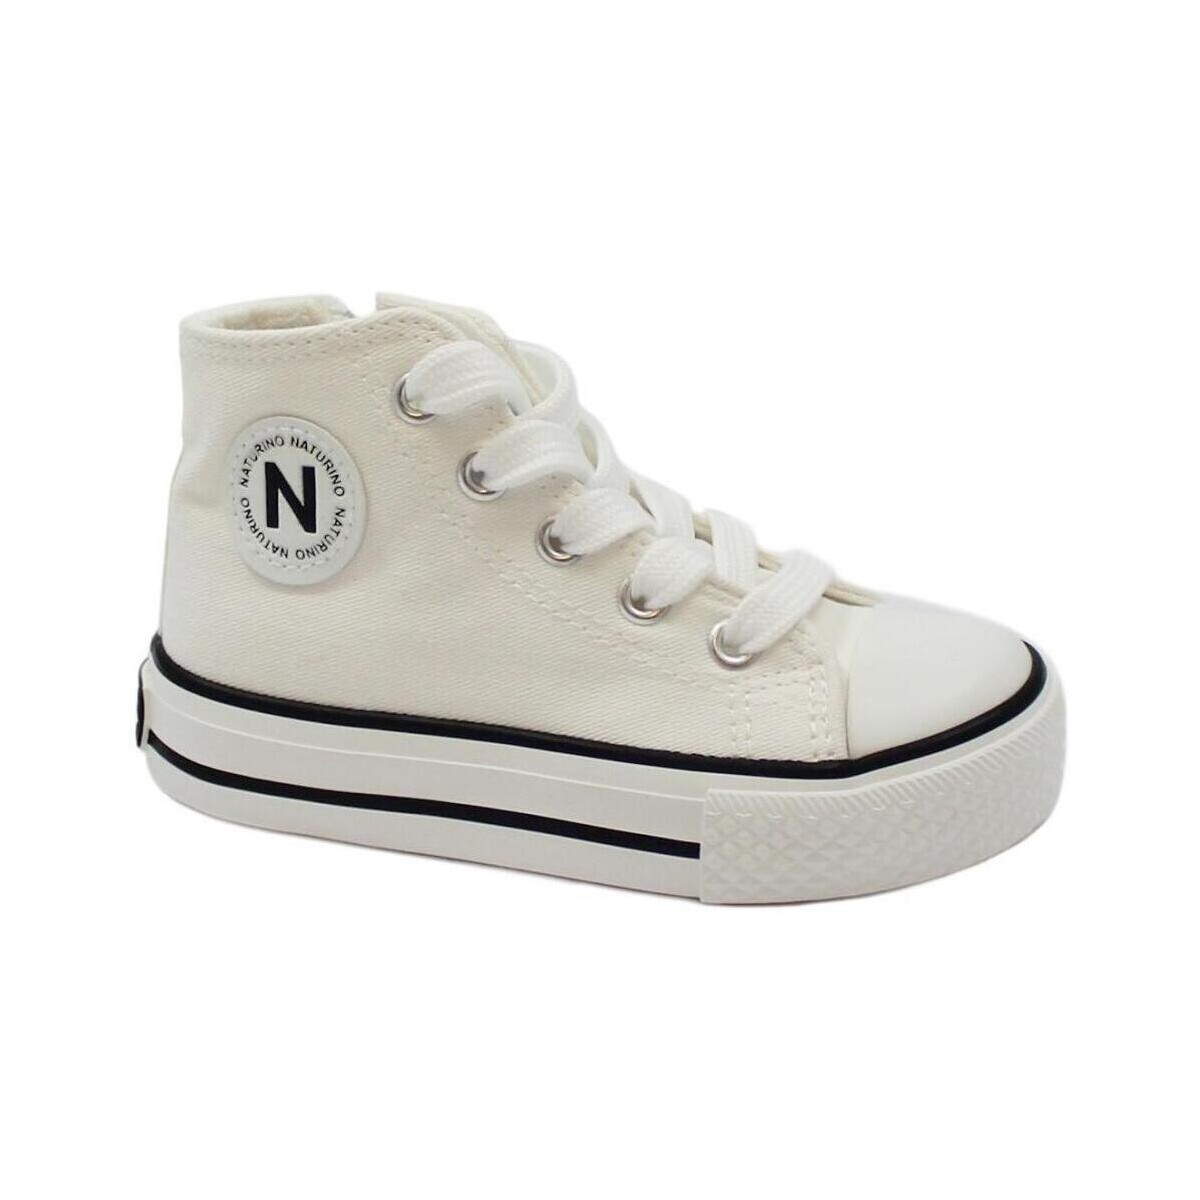 Scarpe Unisex bambino Sneakers alte Naturino NAT-E24-18270-WH-a Bianco